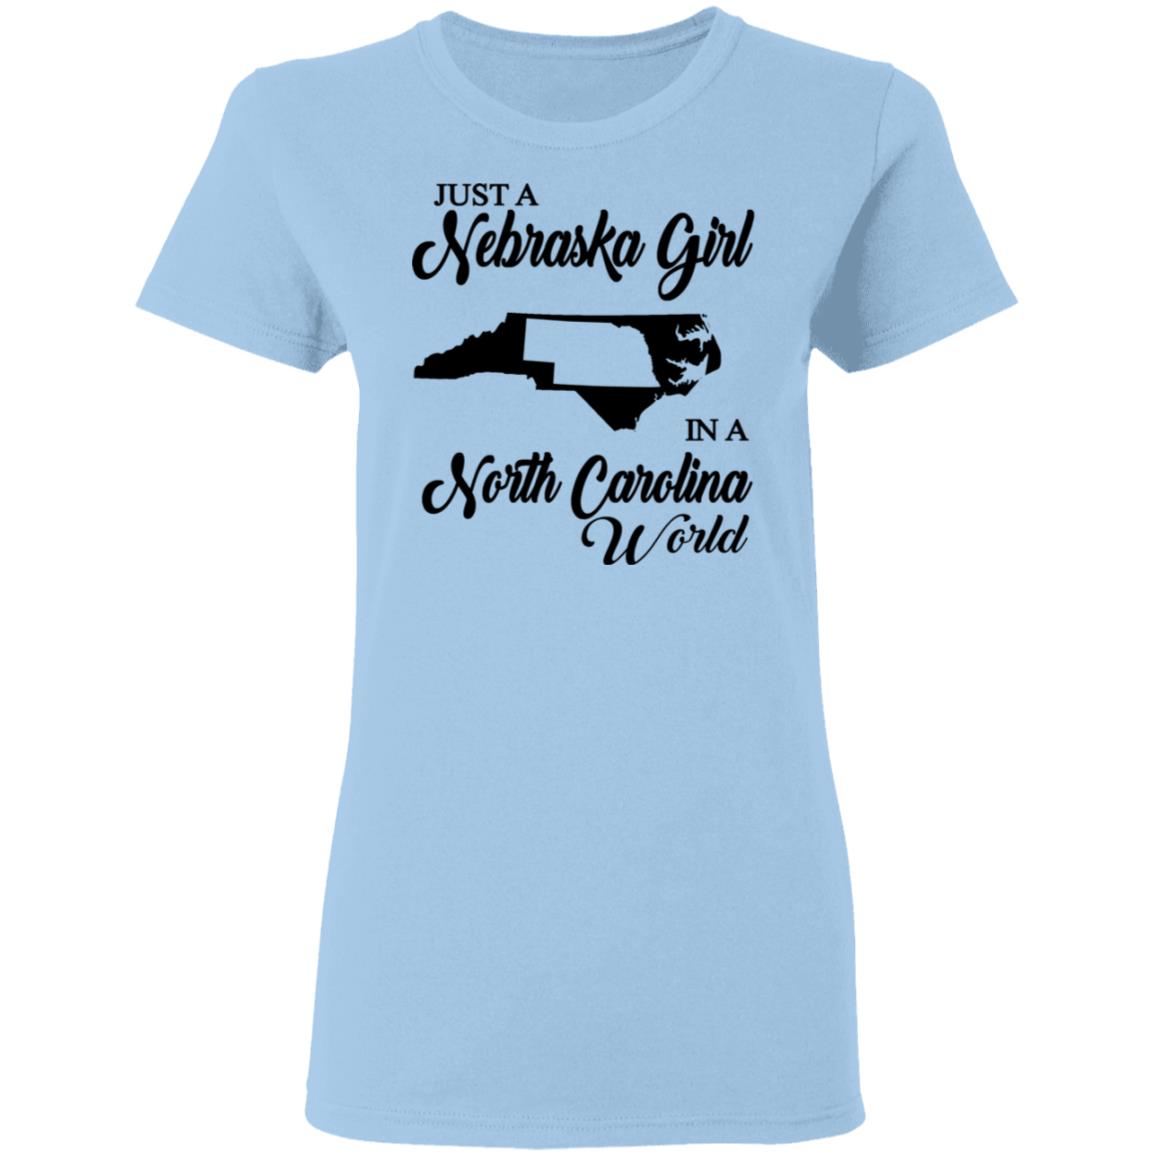 Just A Nebraska Girl In A North Carolina World T-Shirt - T-shirt Teezalo